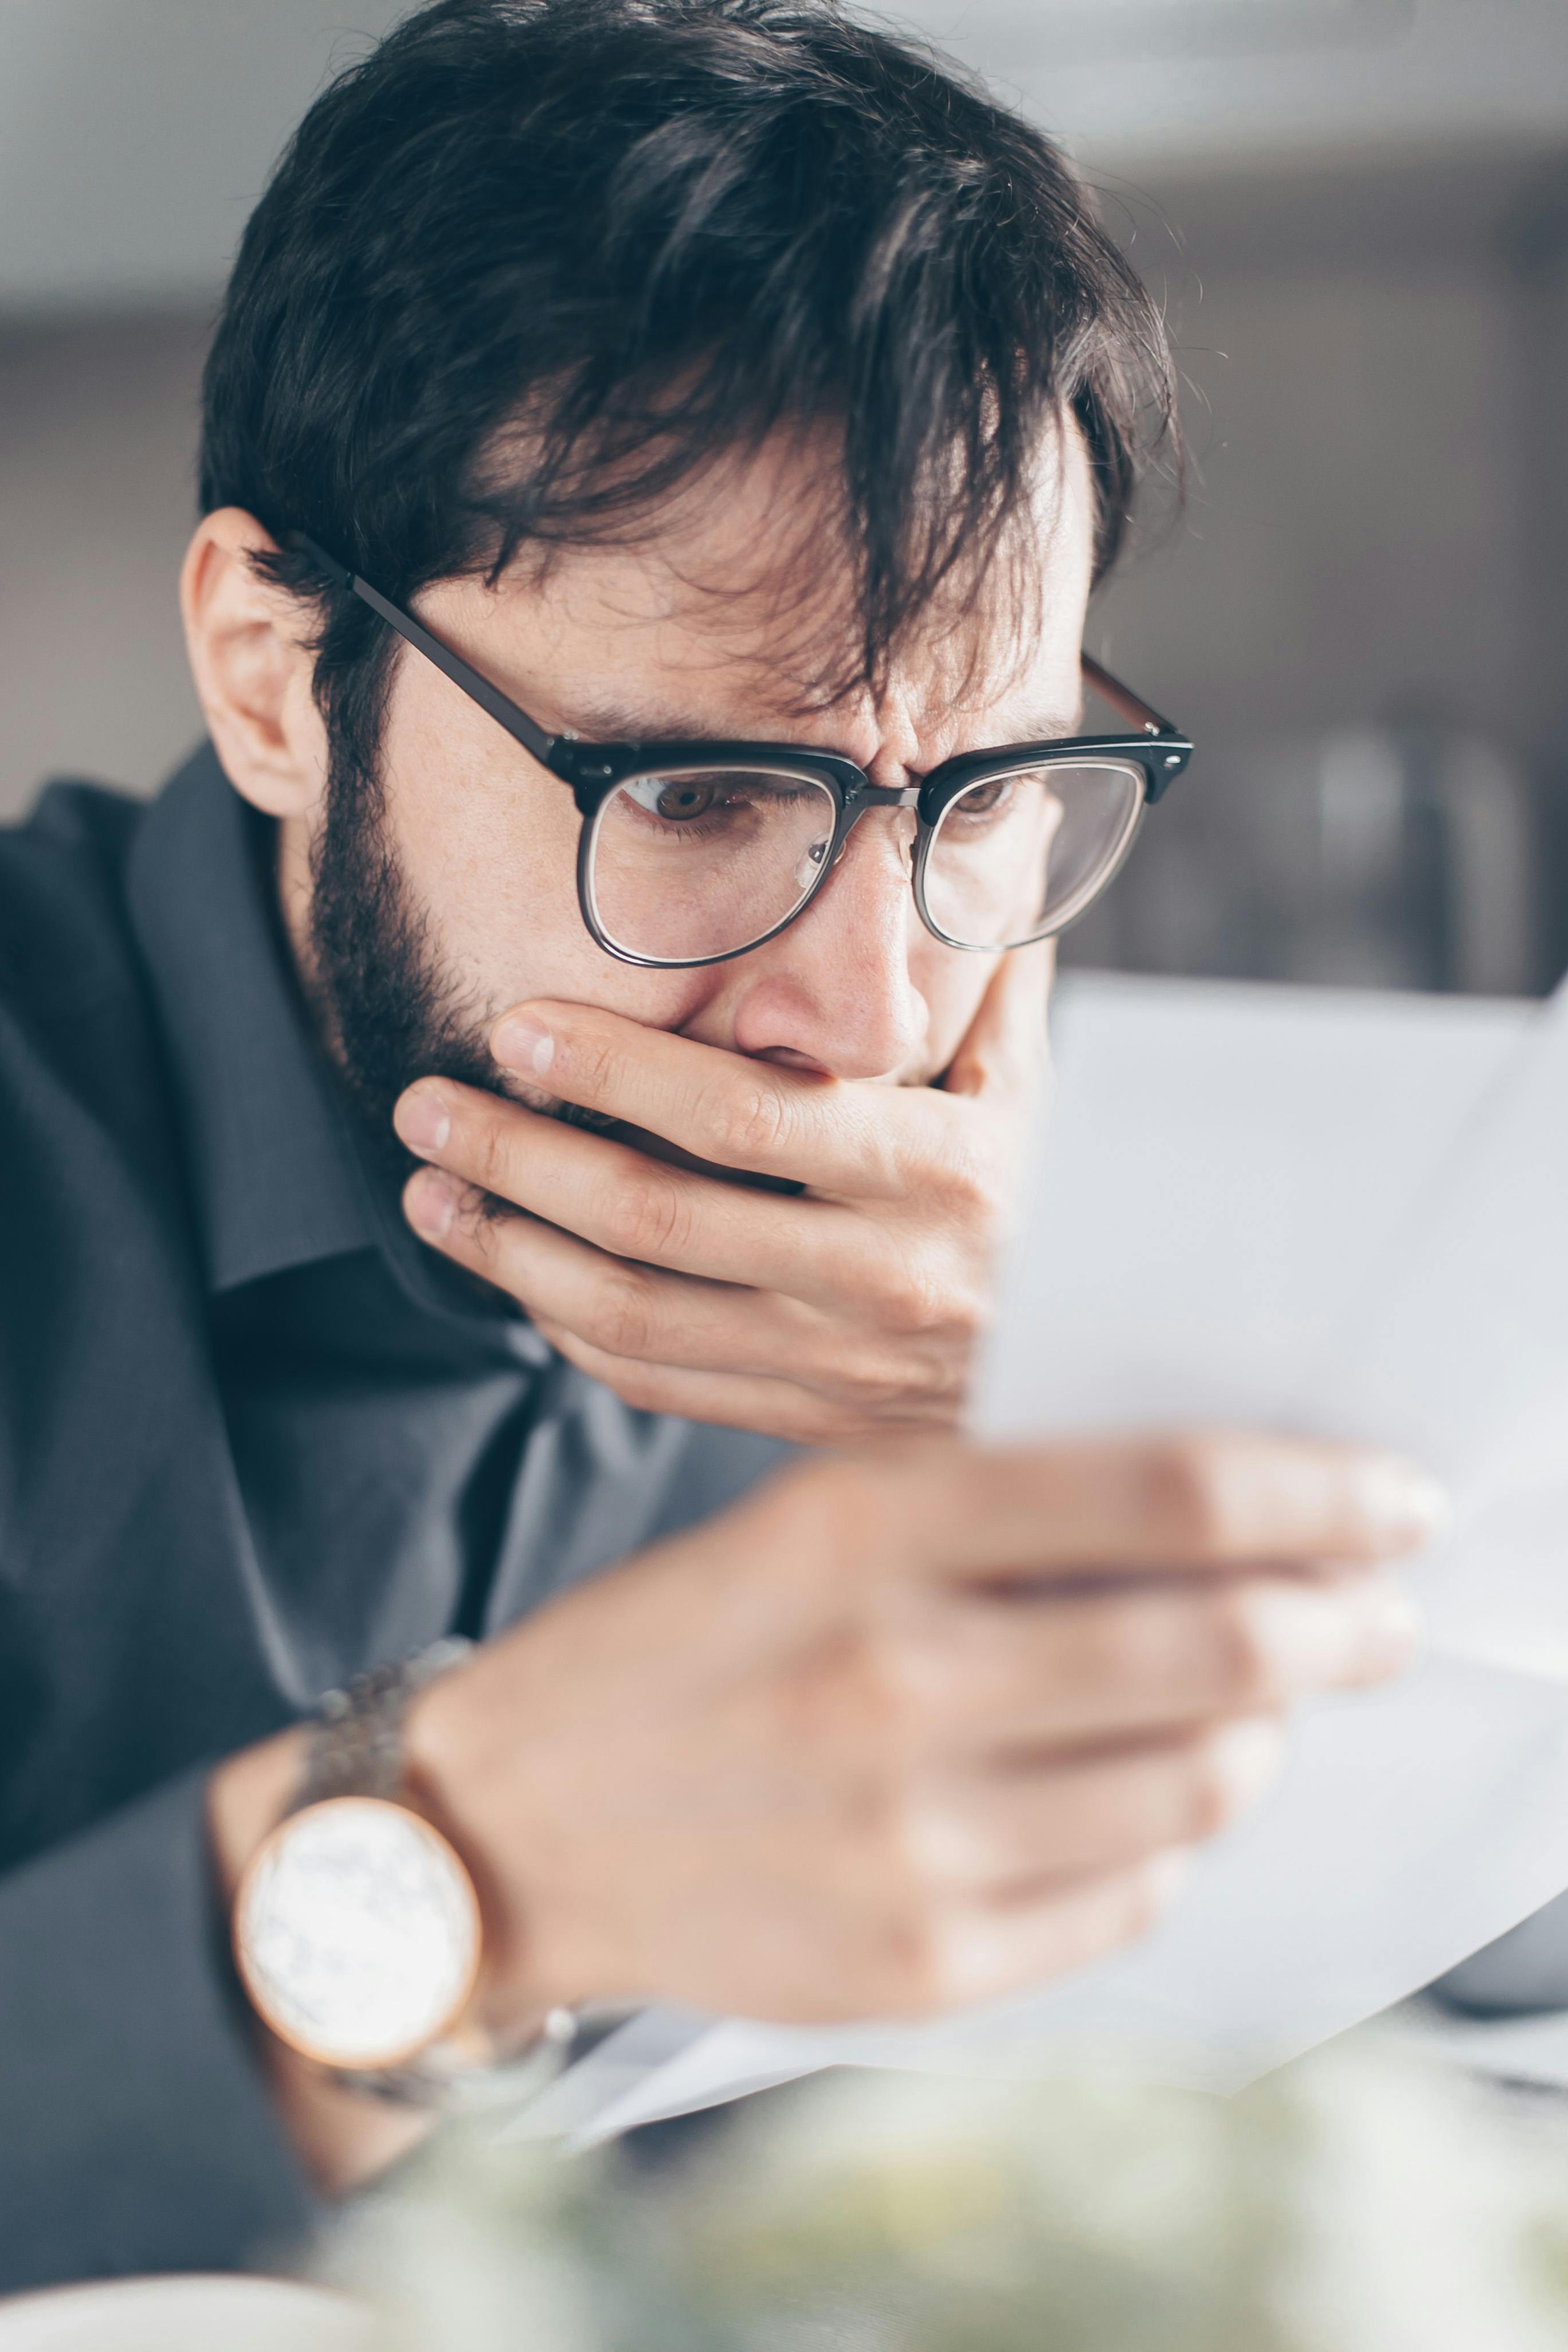 Ein schockierter Mann mit verdecktem Mund, der etwas auf einem Papier liest | Quelle: Pexels